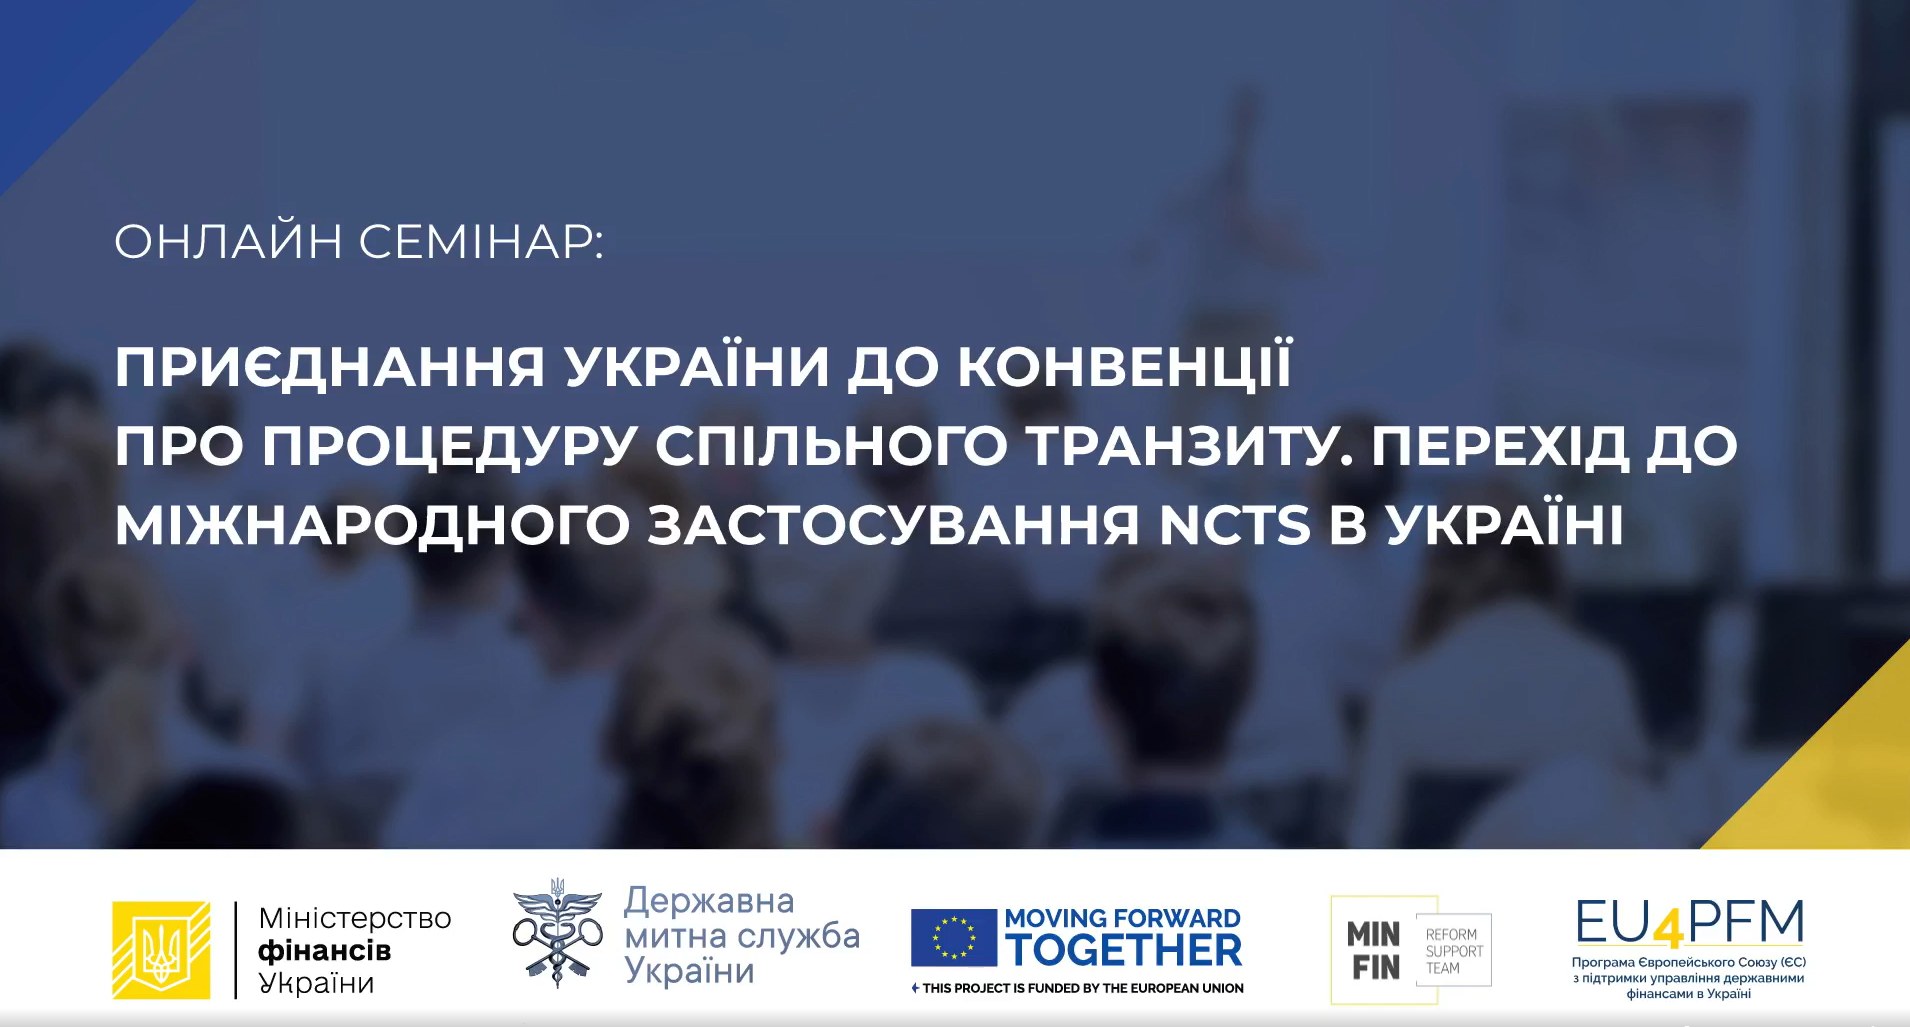 1500 представників бізнесу взяли участь у семінарі про приєднання України до Конвенції про процедуру спільного транзиту (NCTS)